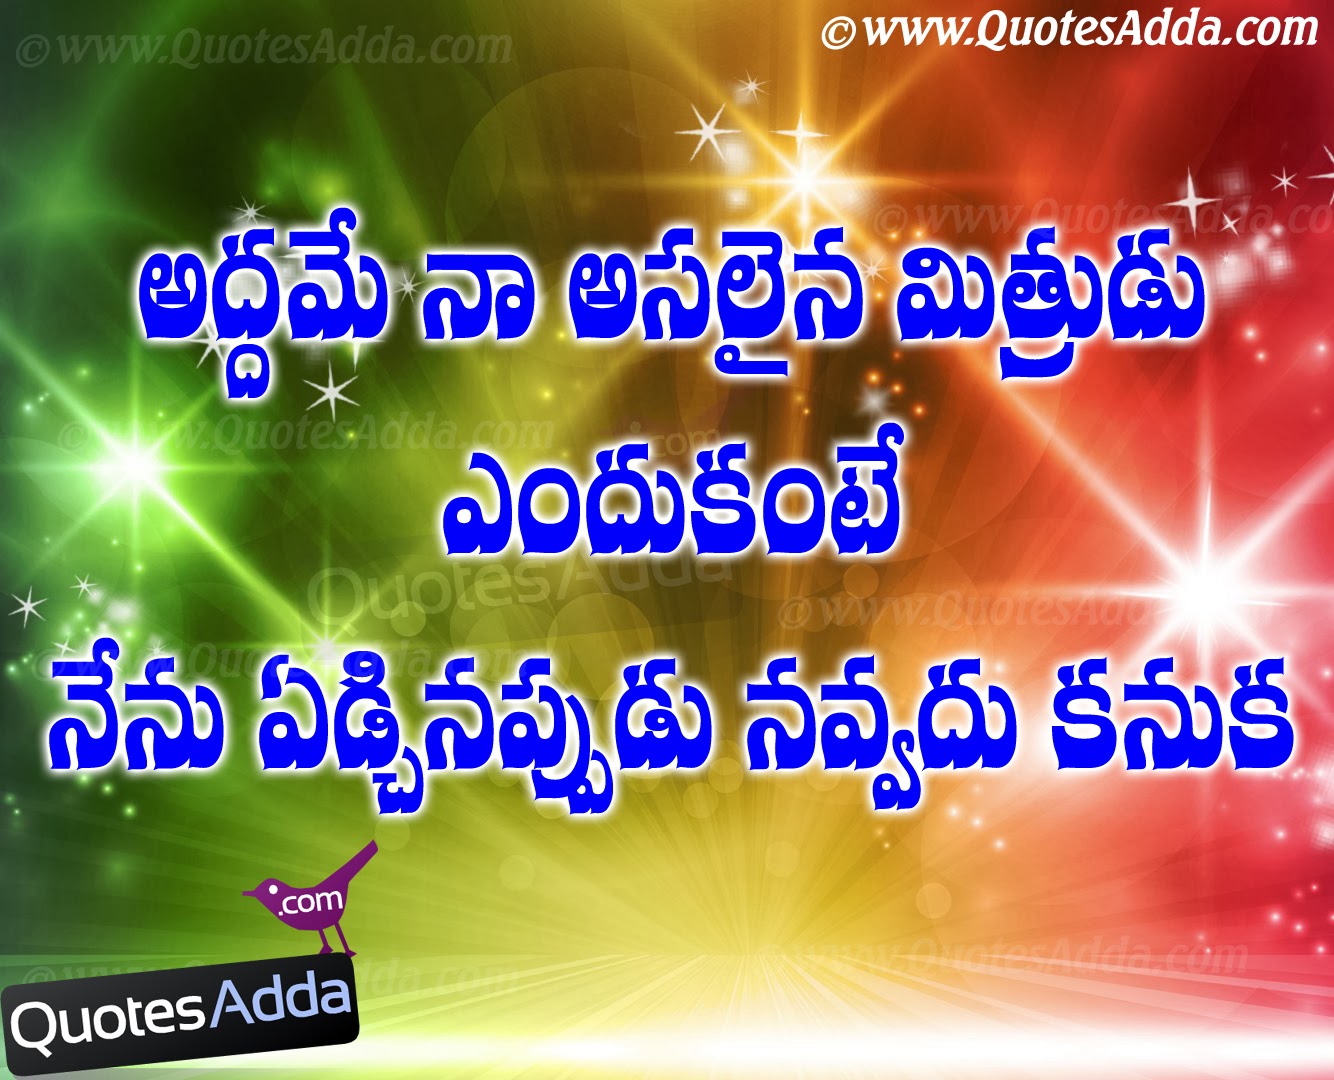  Sad  Quotes  About Friendship Telugu  QuotesGram